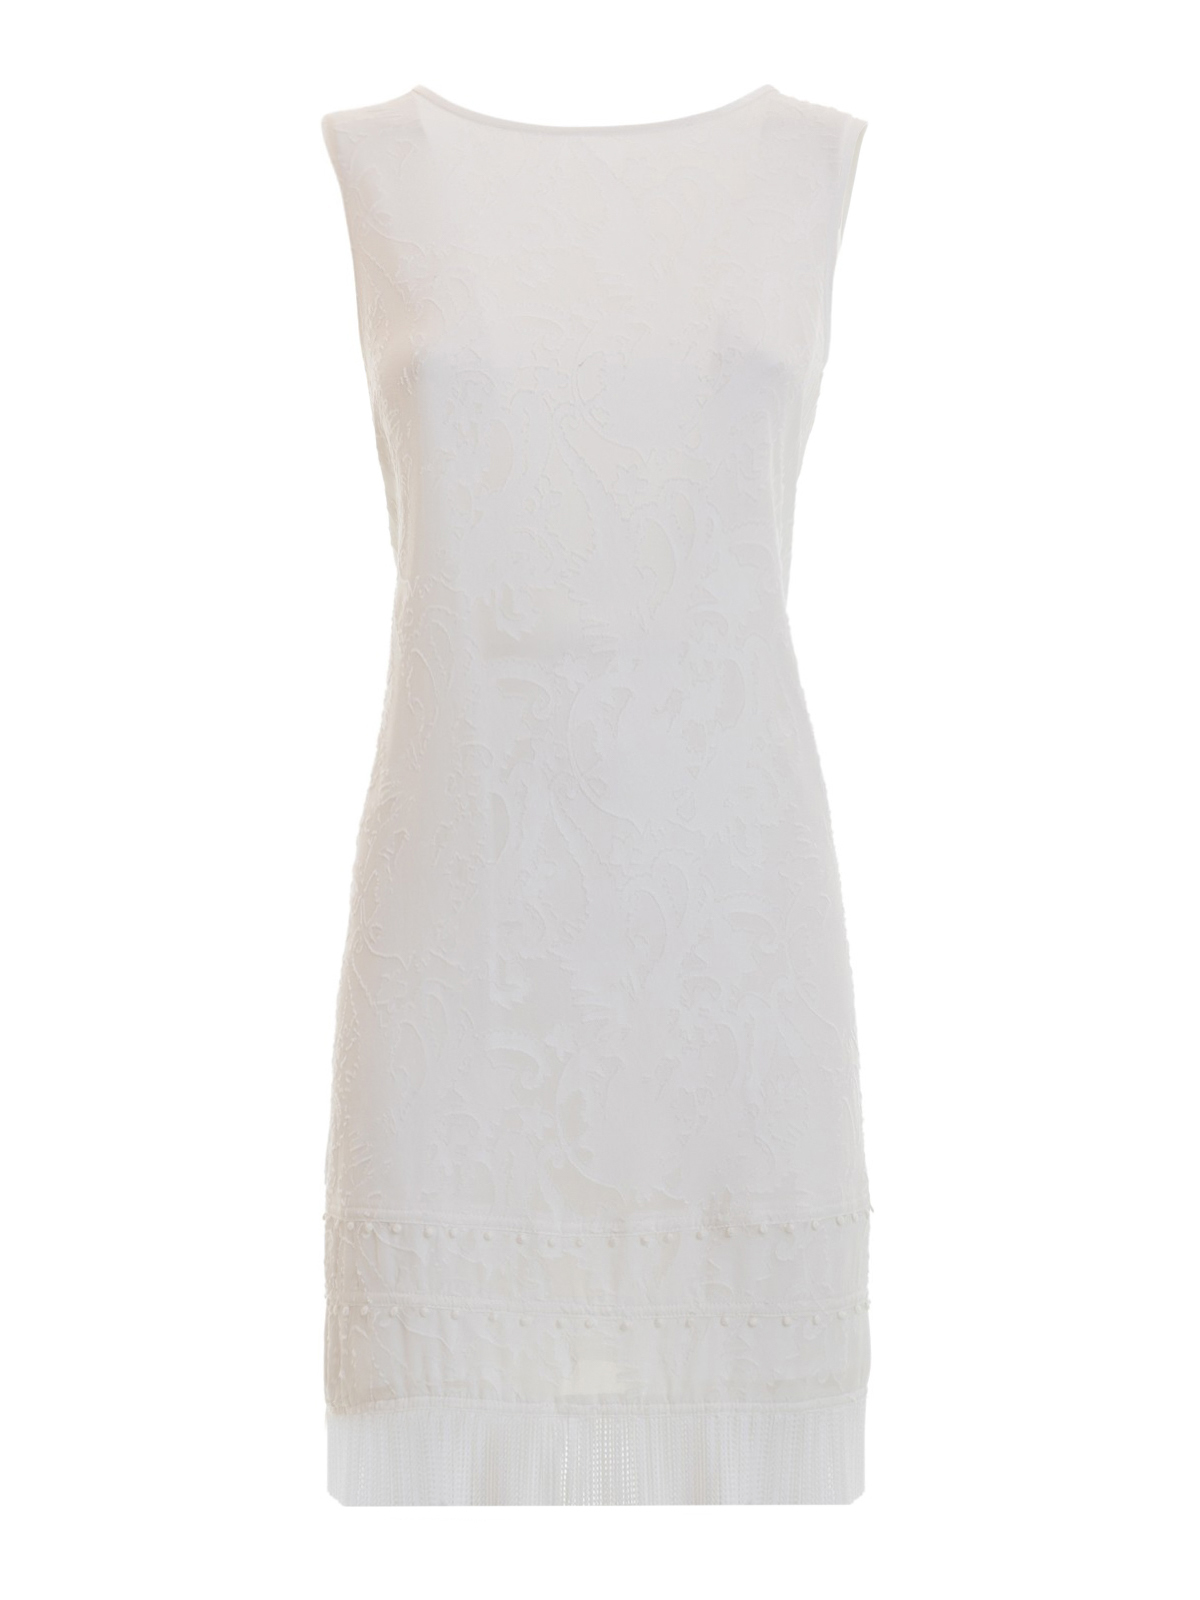 fringed white dress - cocktail dresses 